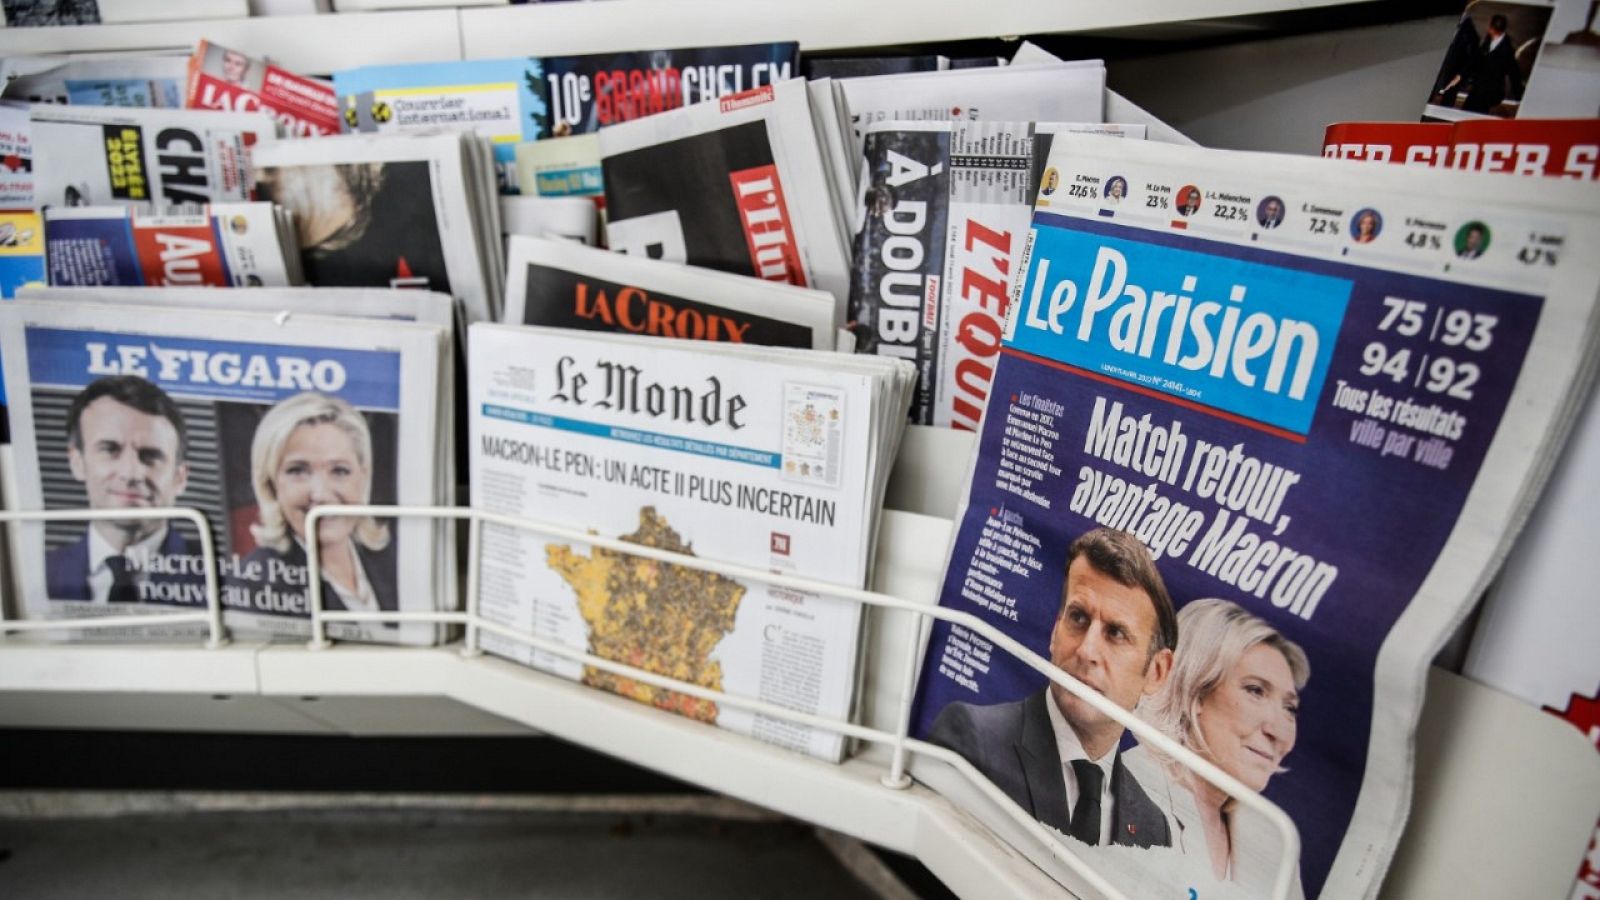 Cinco continentes - Macron y Le Pen pasan a la segunda vuelta de las elecciones en Francia - Escuchar ahora